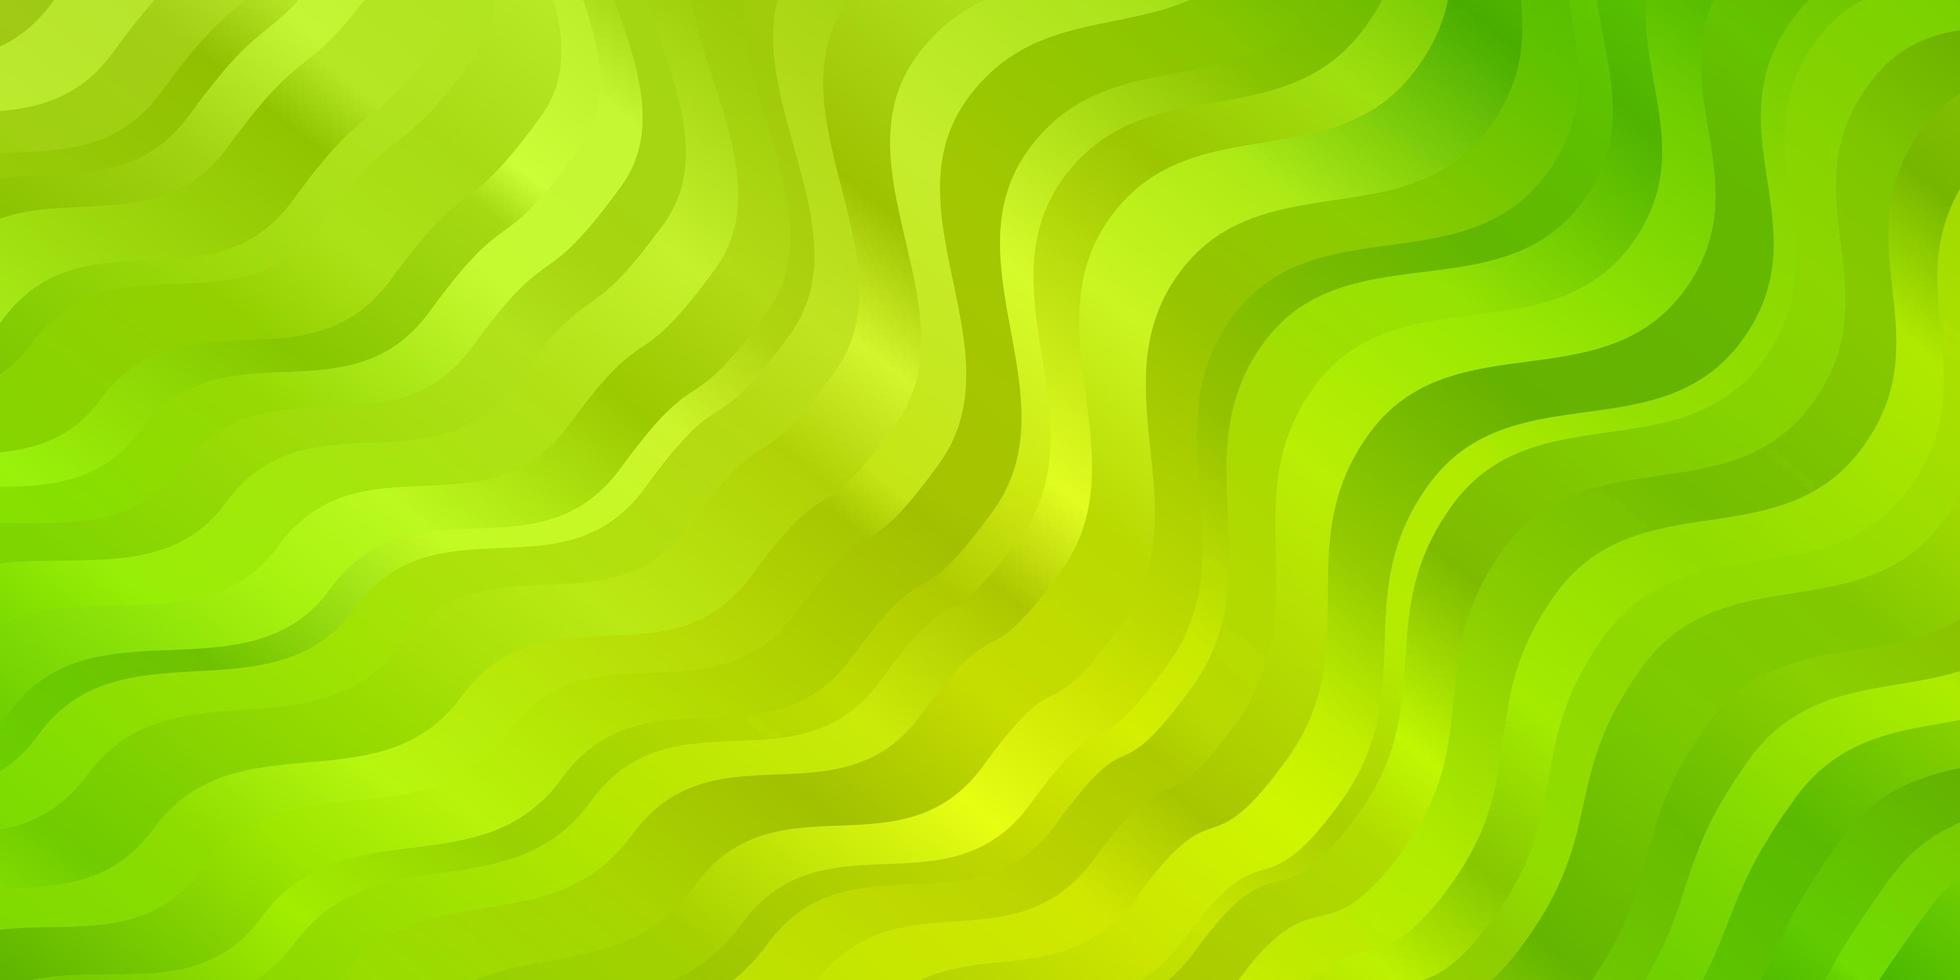 toile de fond de vecteur vert clair, jaune avec des courbes.